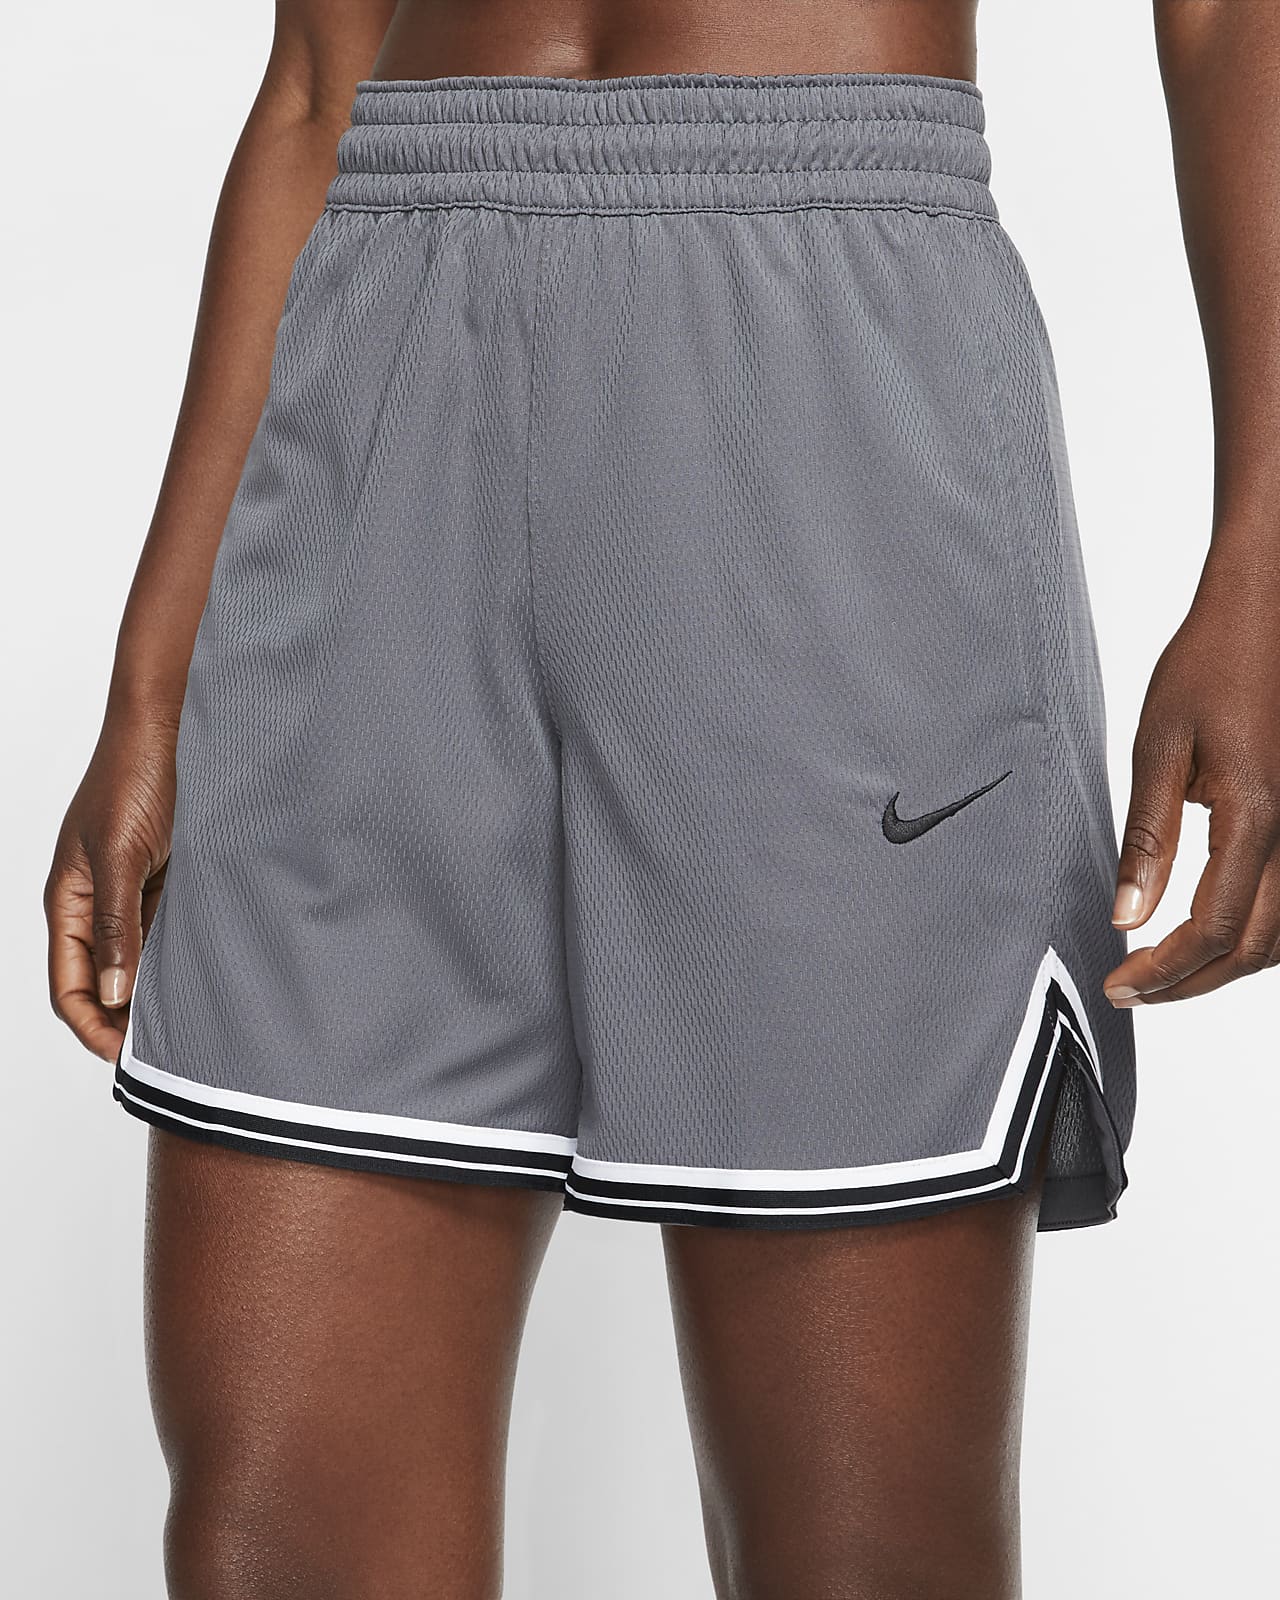 Download Nike Women's Basketball Shorts. Nike.com